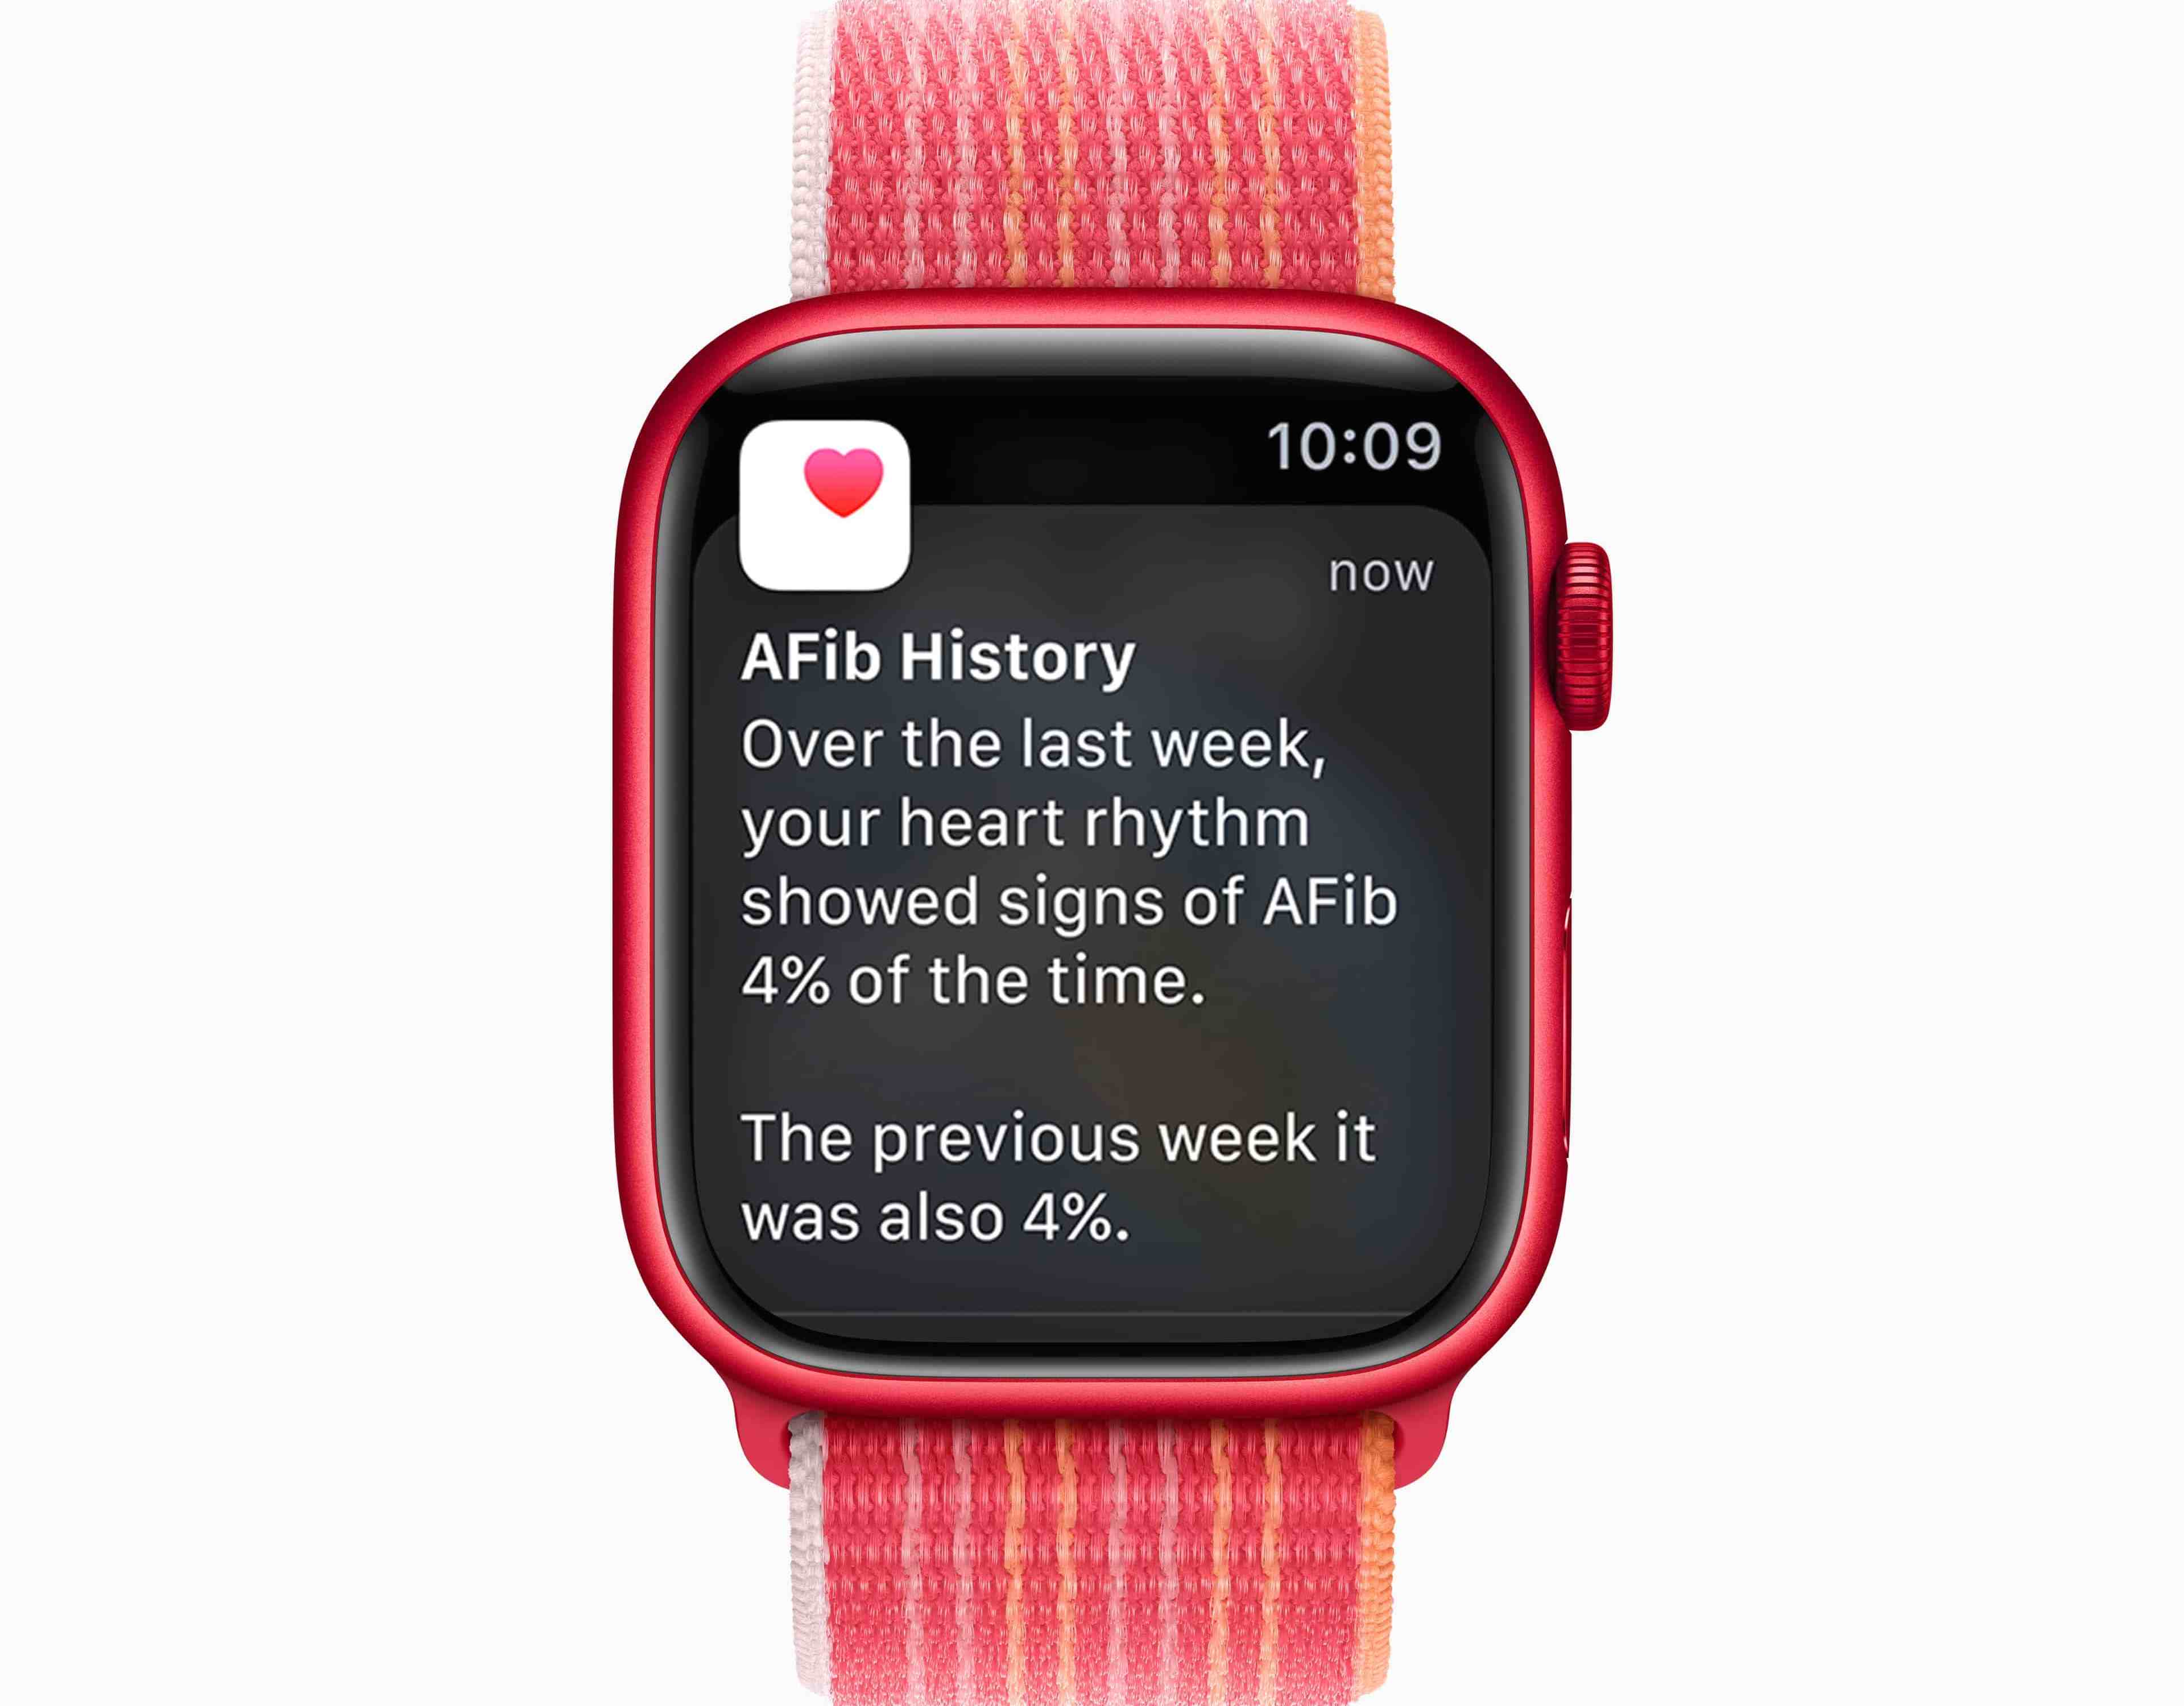 Chytré hodinky Apple Watch SE2 zahŕňajú Históriu fibrilácie predsiení (AFib), ktorá príde vhod všetkým užívateľom s touto závažnou tachyarytmiu.